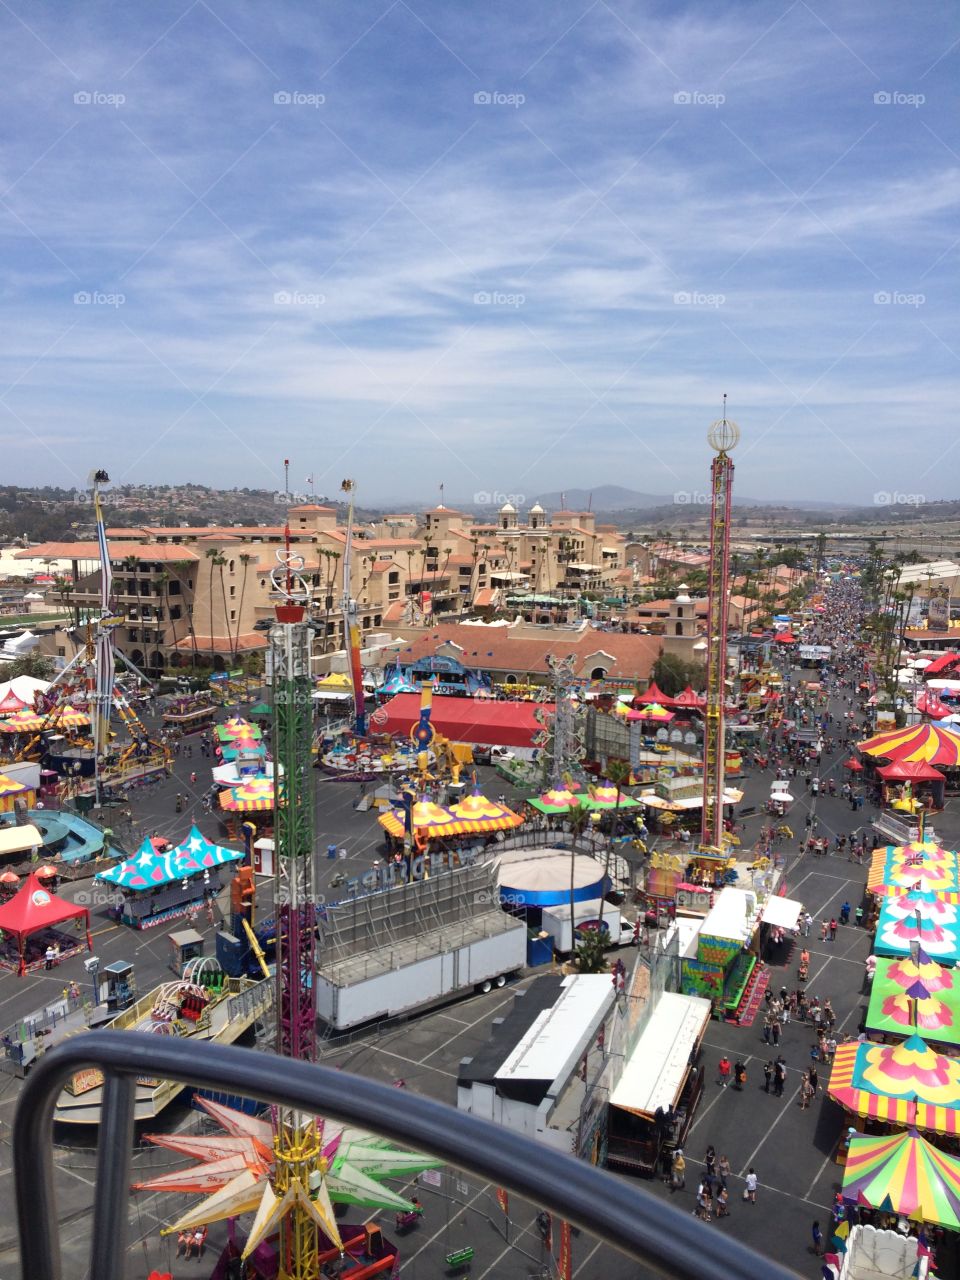 Del Mar Fair 2014. View from the ferris wheel 